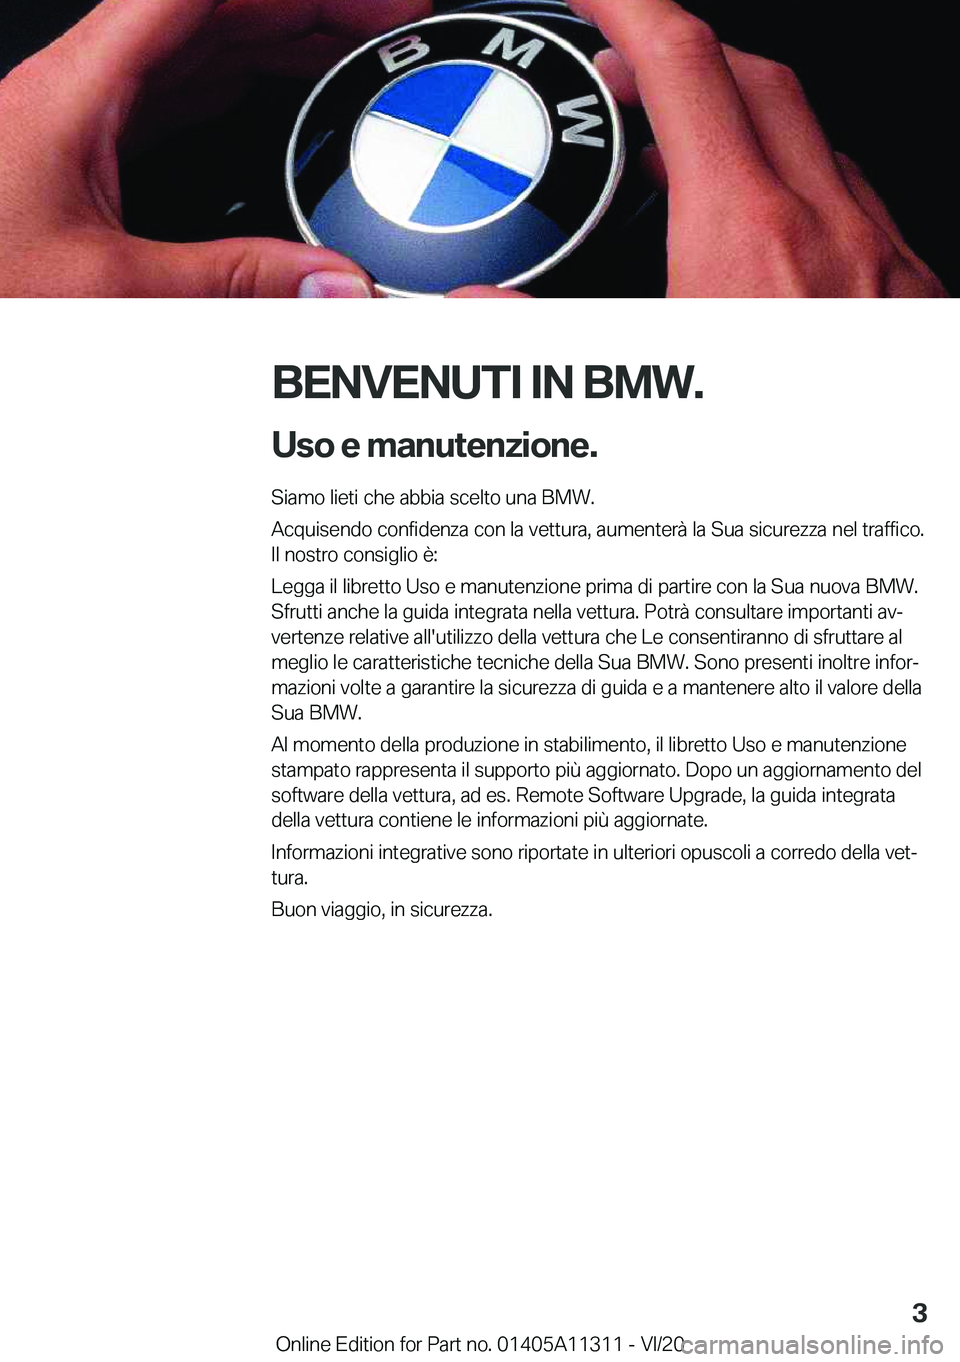 BMW 5 SERIES 2021  Libretti Di Uso E manutenzione (in Italian) �B�E�N�V�E�N�U�T�I��I�N��B�M�W�.�U�s�o��e��m�a�n�u�t�e�n�z�i�o�n�e�.
�S�i�a�m�o��l�i�e�t�i��c�h�e��a�b�b�i�a��s�c�e�l�t�o��u�n�a��B�M�W�.
�A�c�q�u�i�s�e�n�d�o��c�o�n�f�i�d�e�n�z�a��c�o�n�